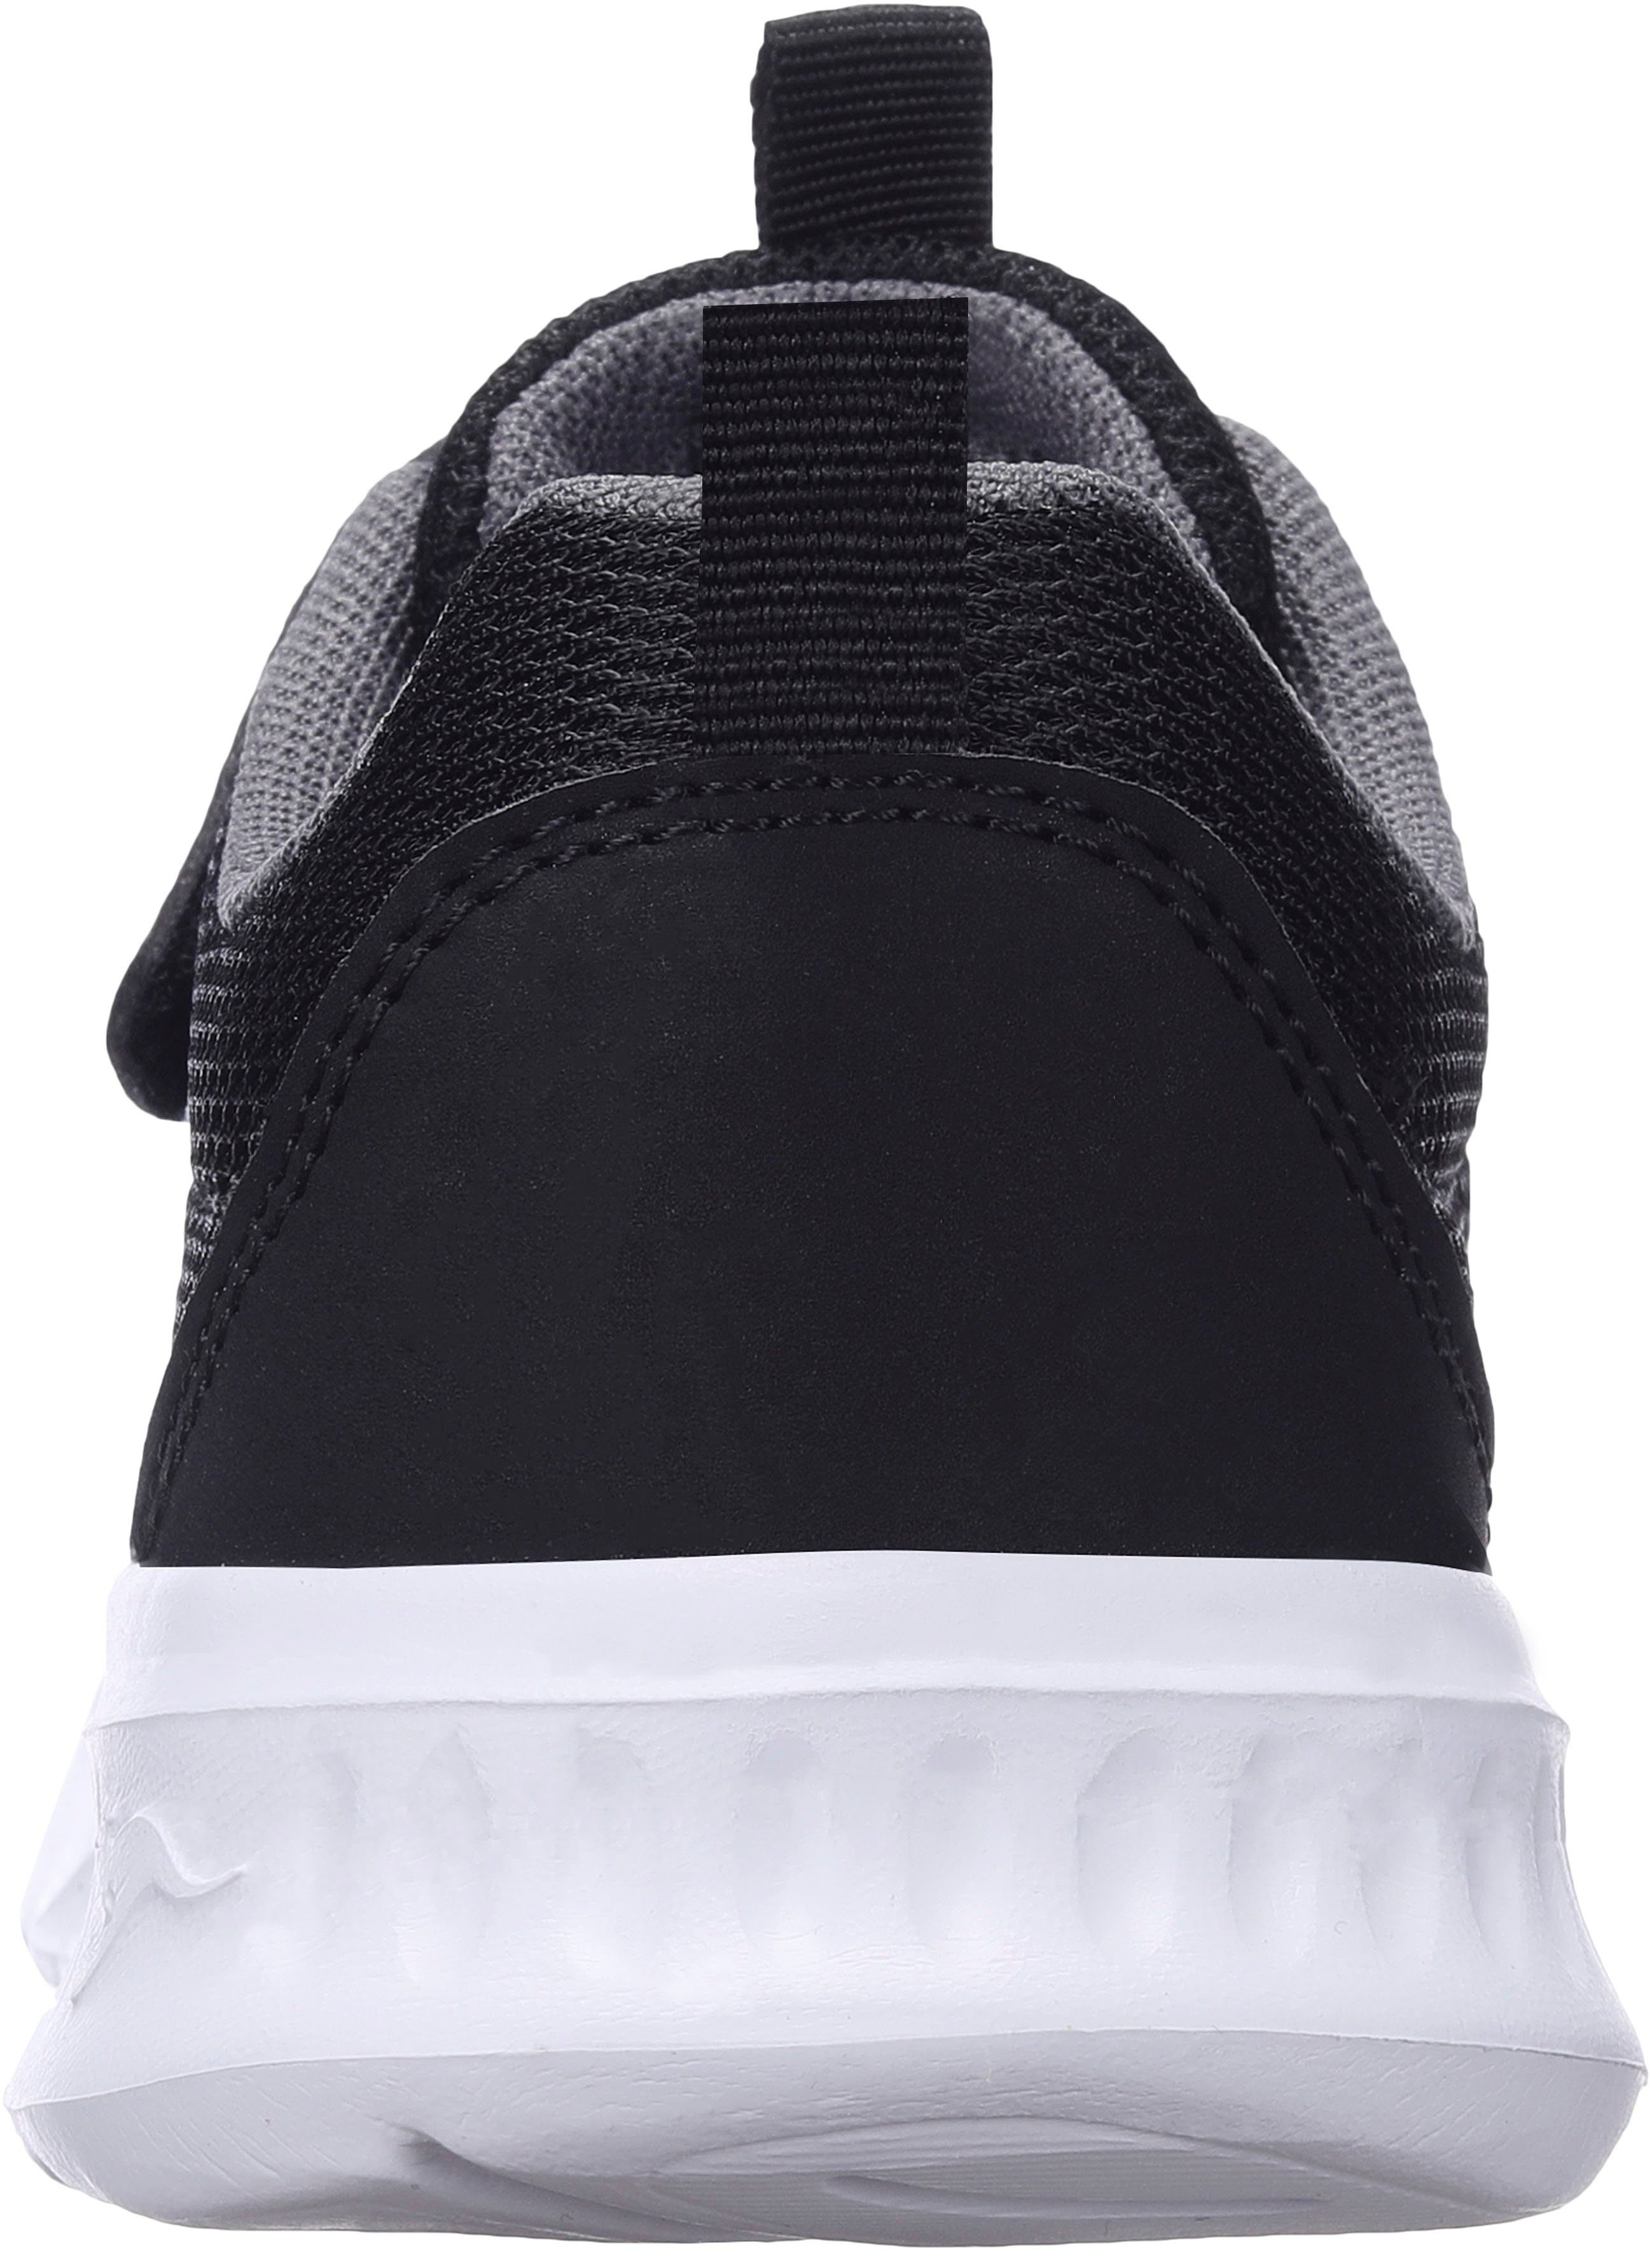 KangaROOS KL-Rise EV Sneaker mit schwarz-grau elastischen und Klettverschluss Schnürsenkeln